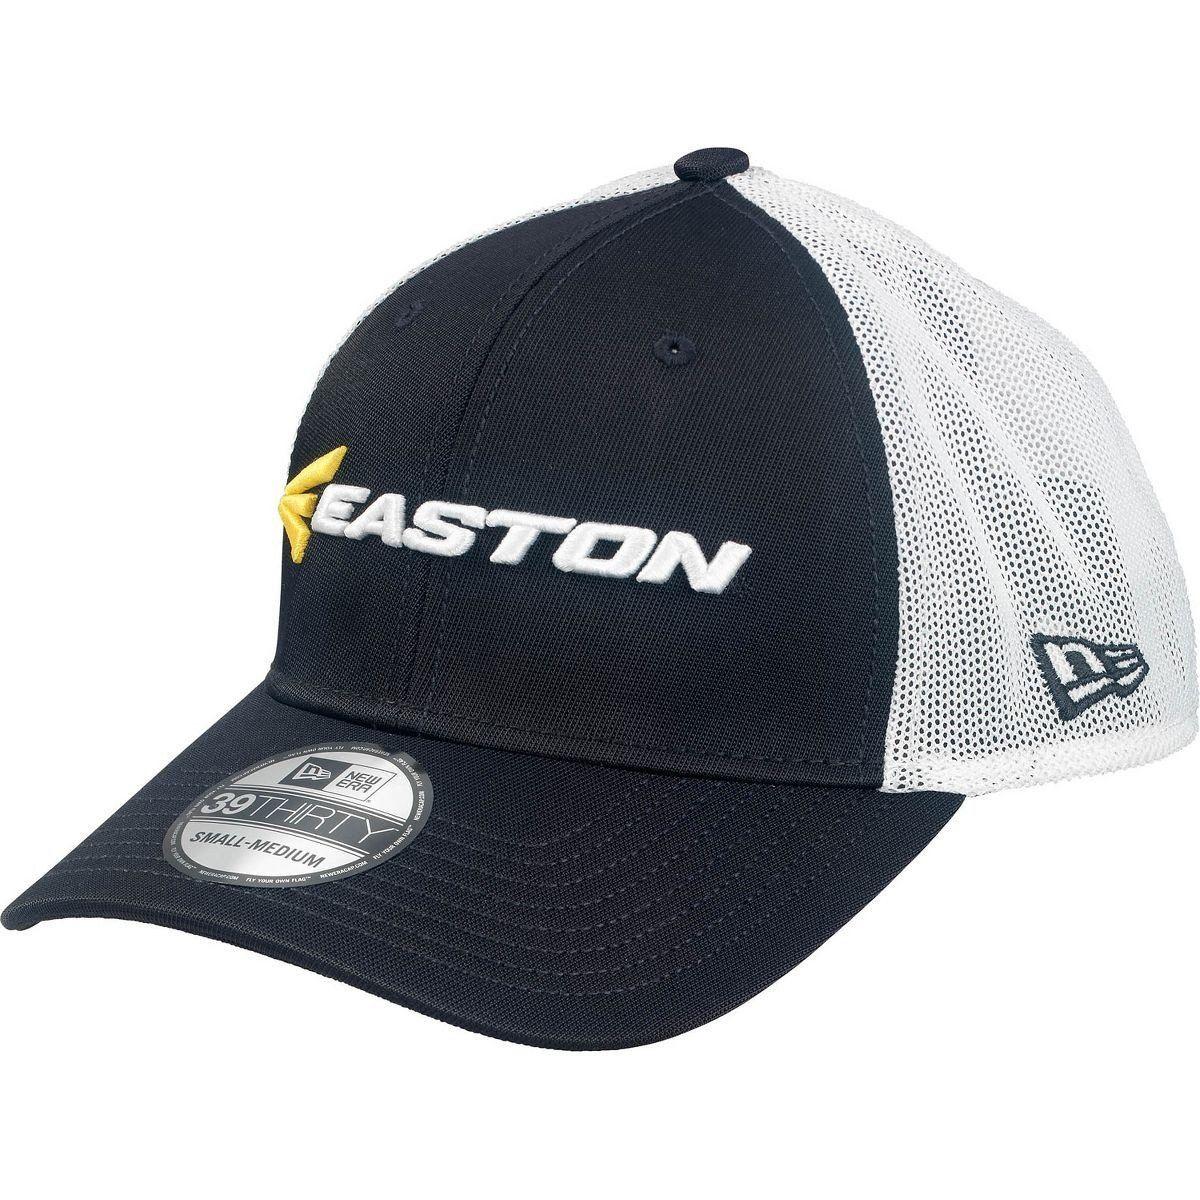 New Easton Logo - Easton M7 LINEAR LOGO New Era 39THIRTY Hat